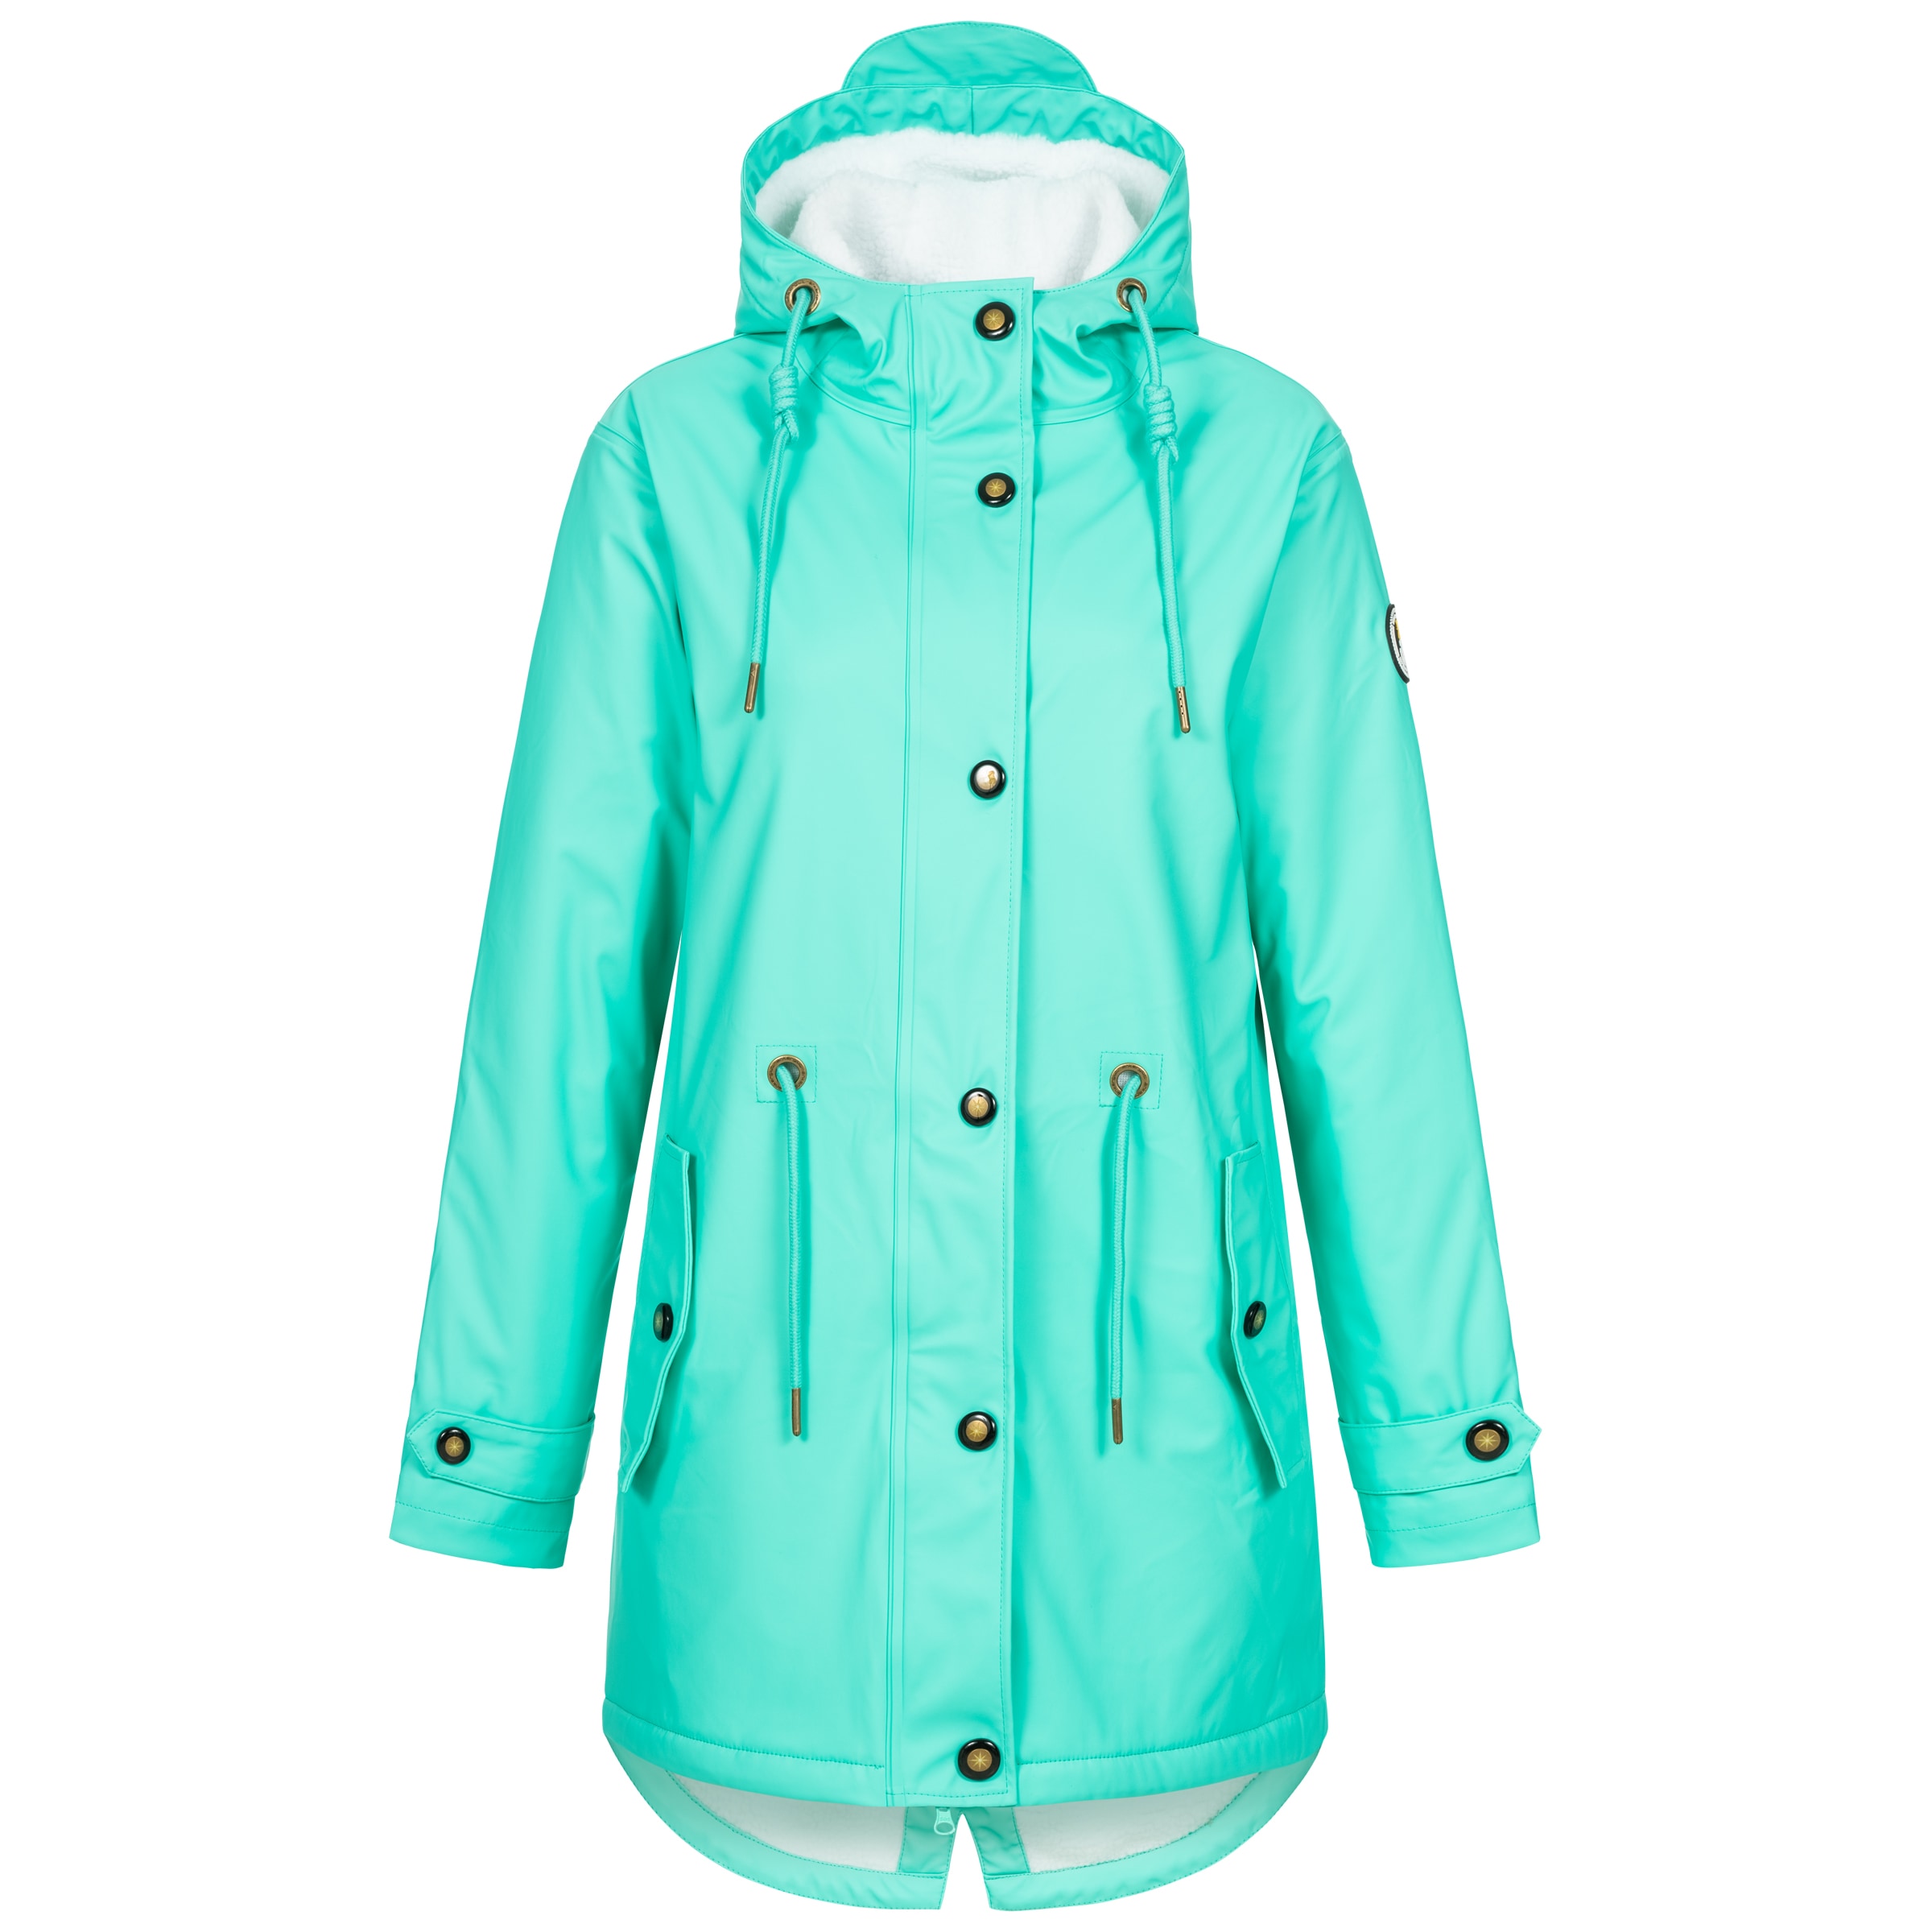 Regenjacke Original Büro oder Watt? OTTO Kleidung Jacken & Mäntel Jacken Regenjacken Unisex Regenmantel für Erwachsene und Kinder 